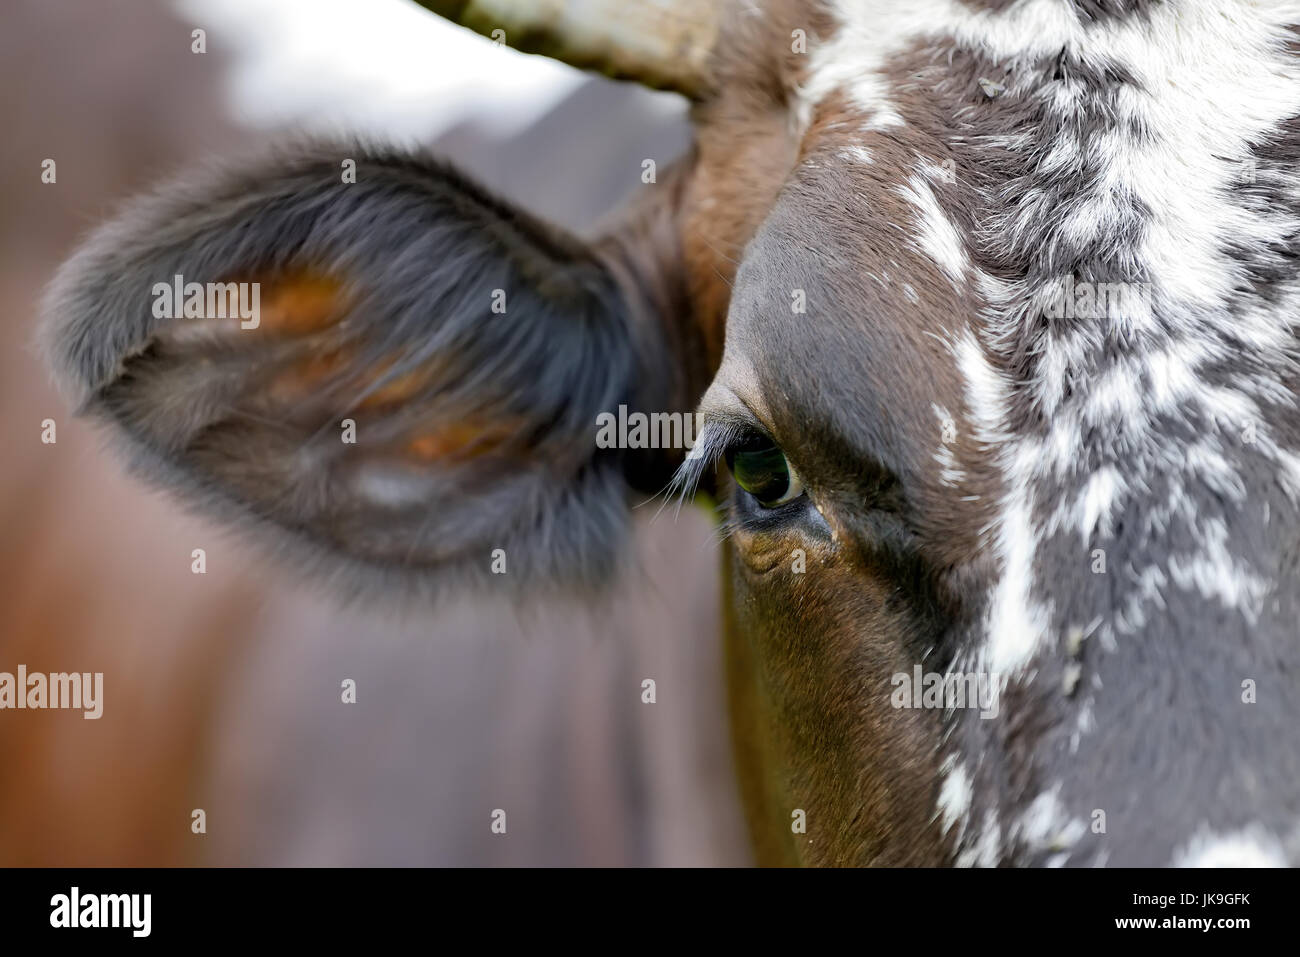 Large eyes with eyelashes a cow Stock Photo